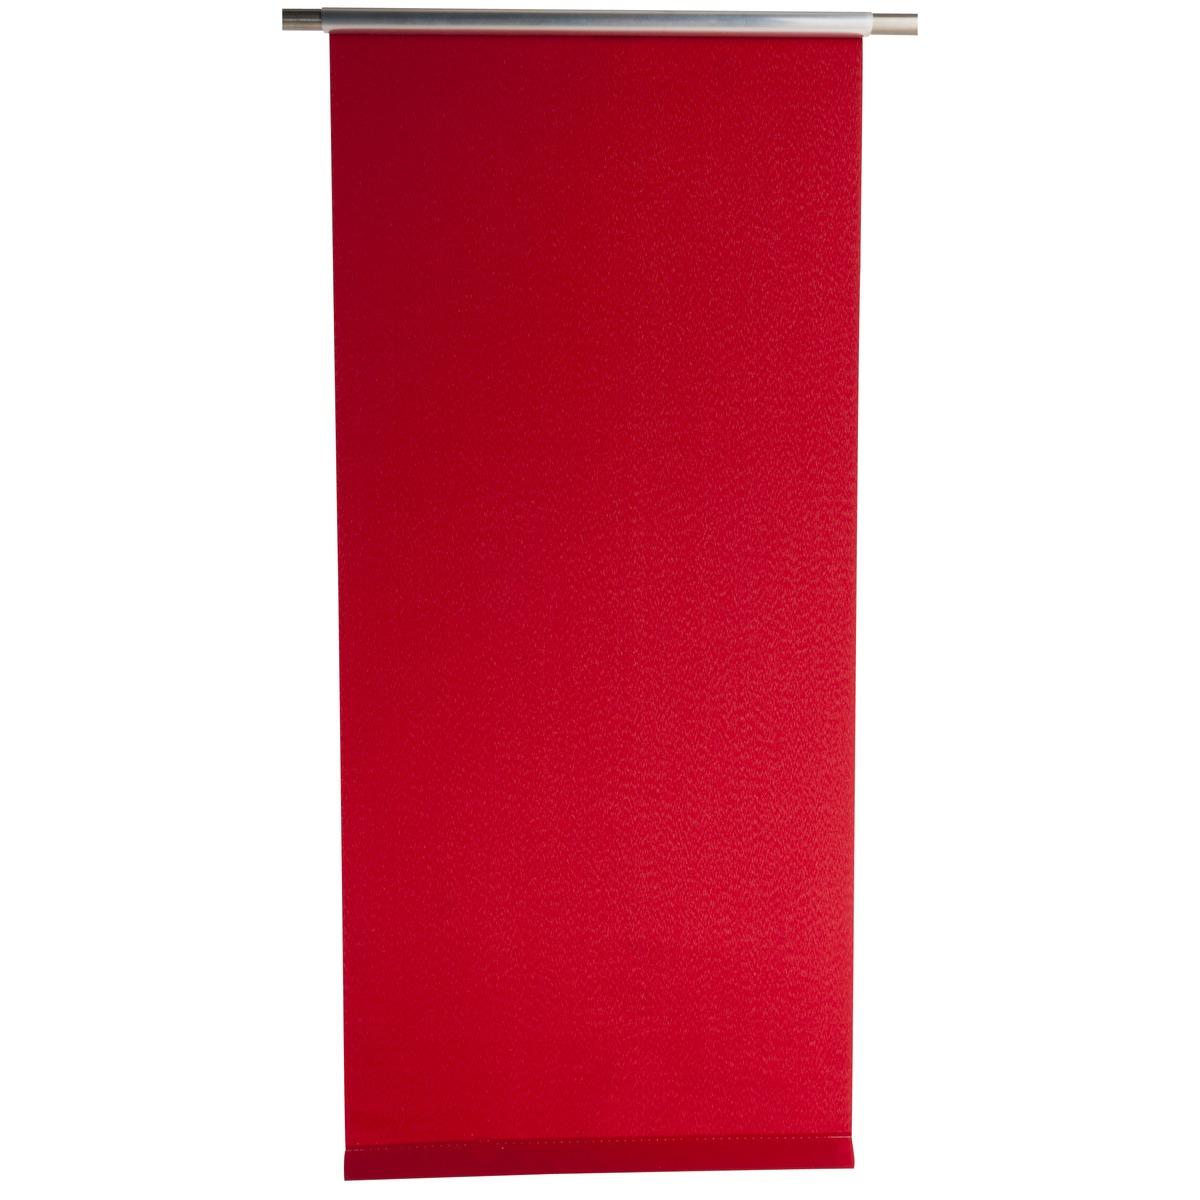 Store enrouleur tamisant - 60 x 180 cm - Rouge